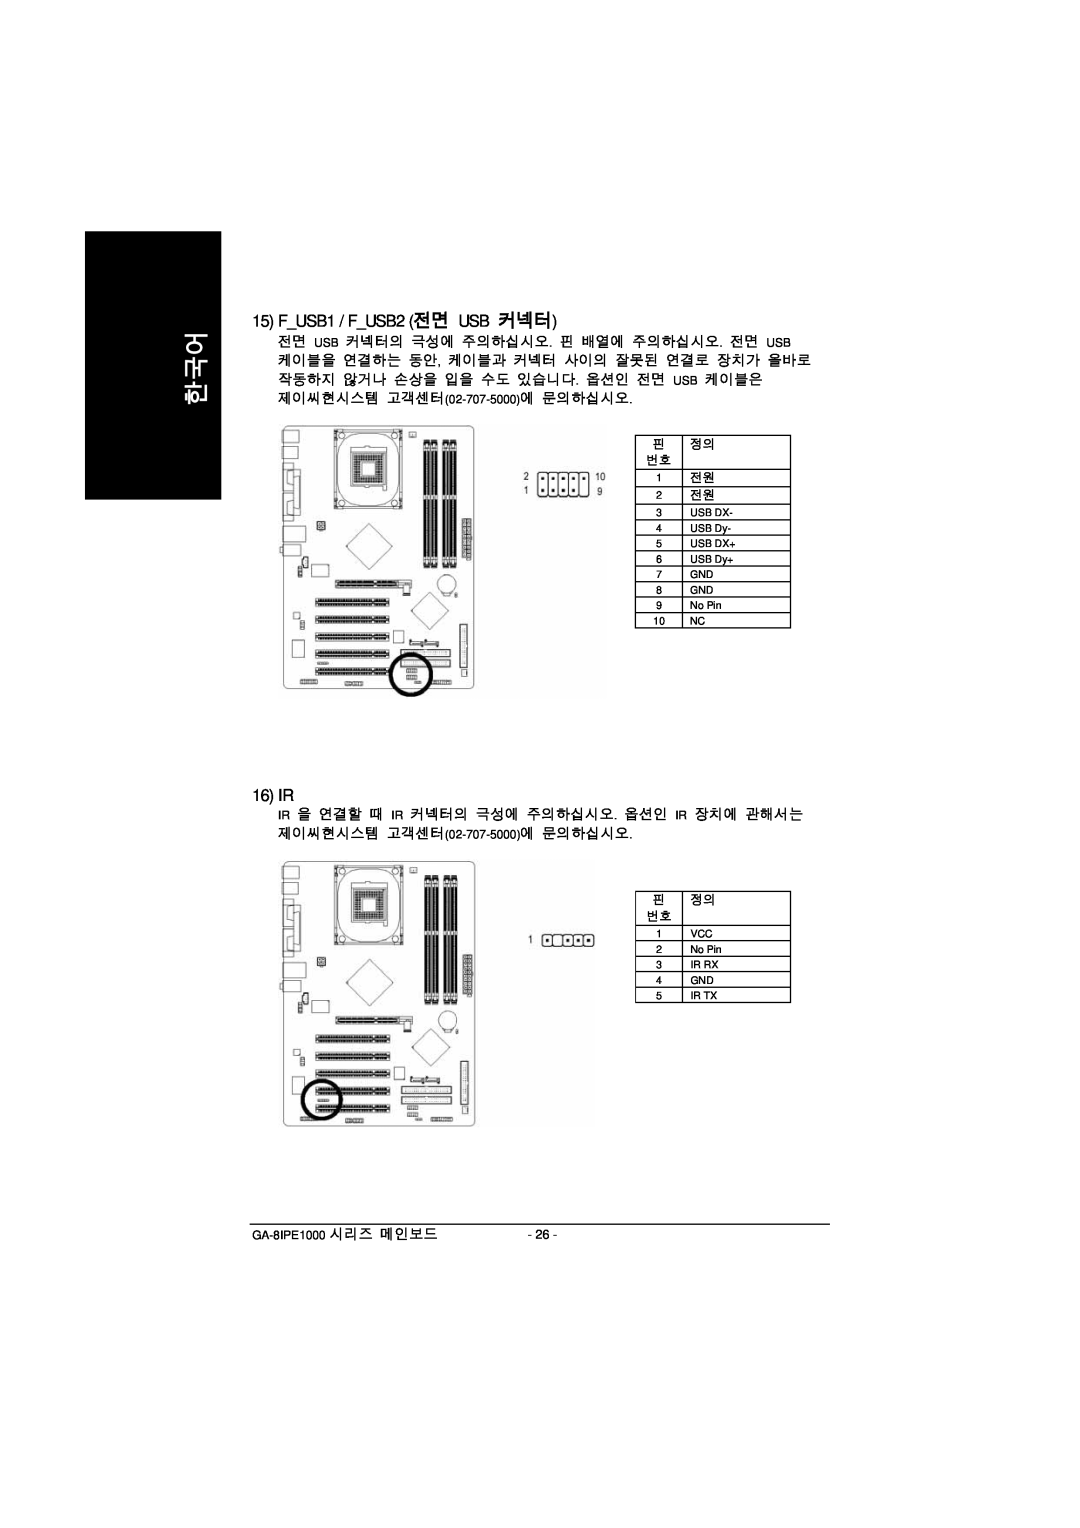 Intel GA-8IPE1000 manual FUSB1 / FUSB2 전면 USB 커넥터, 16 IR 